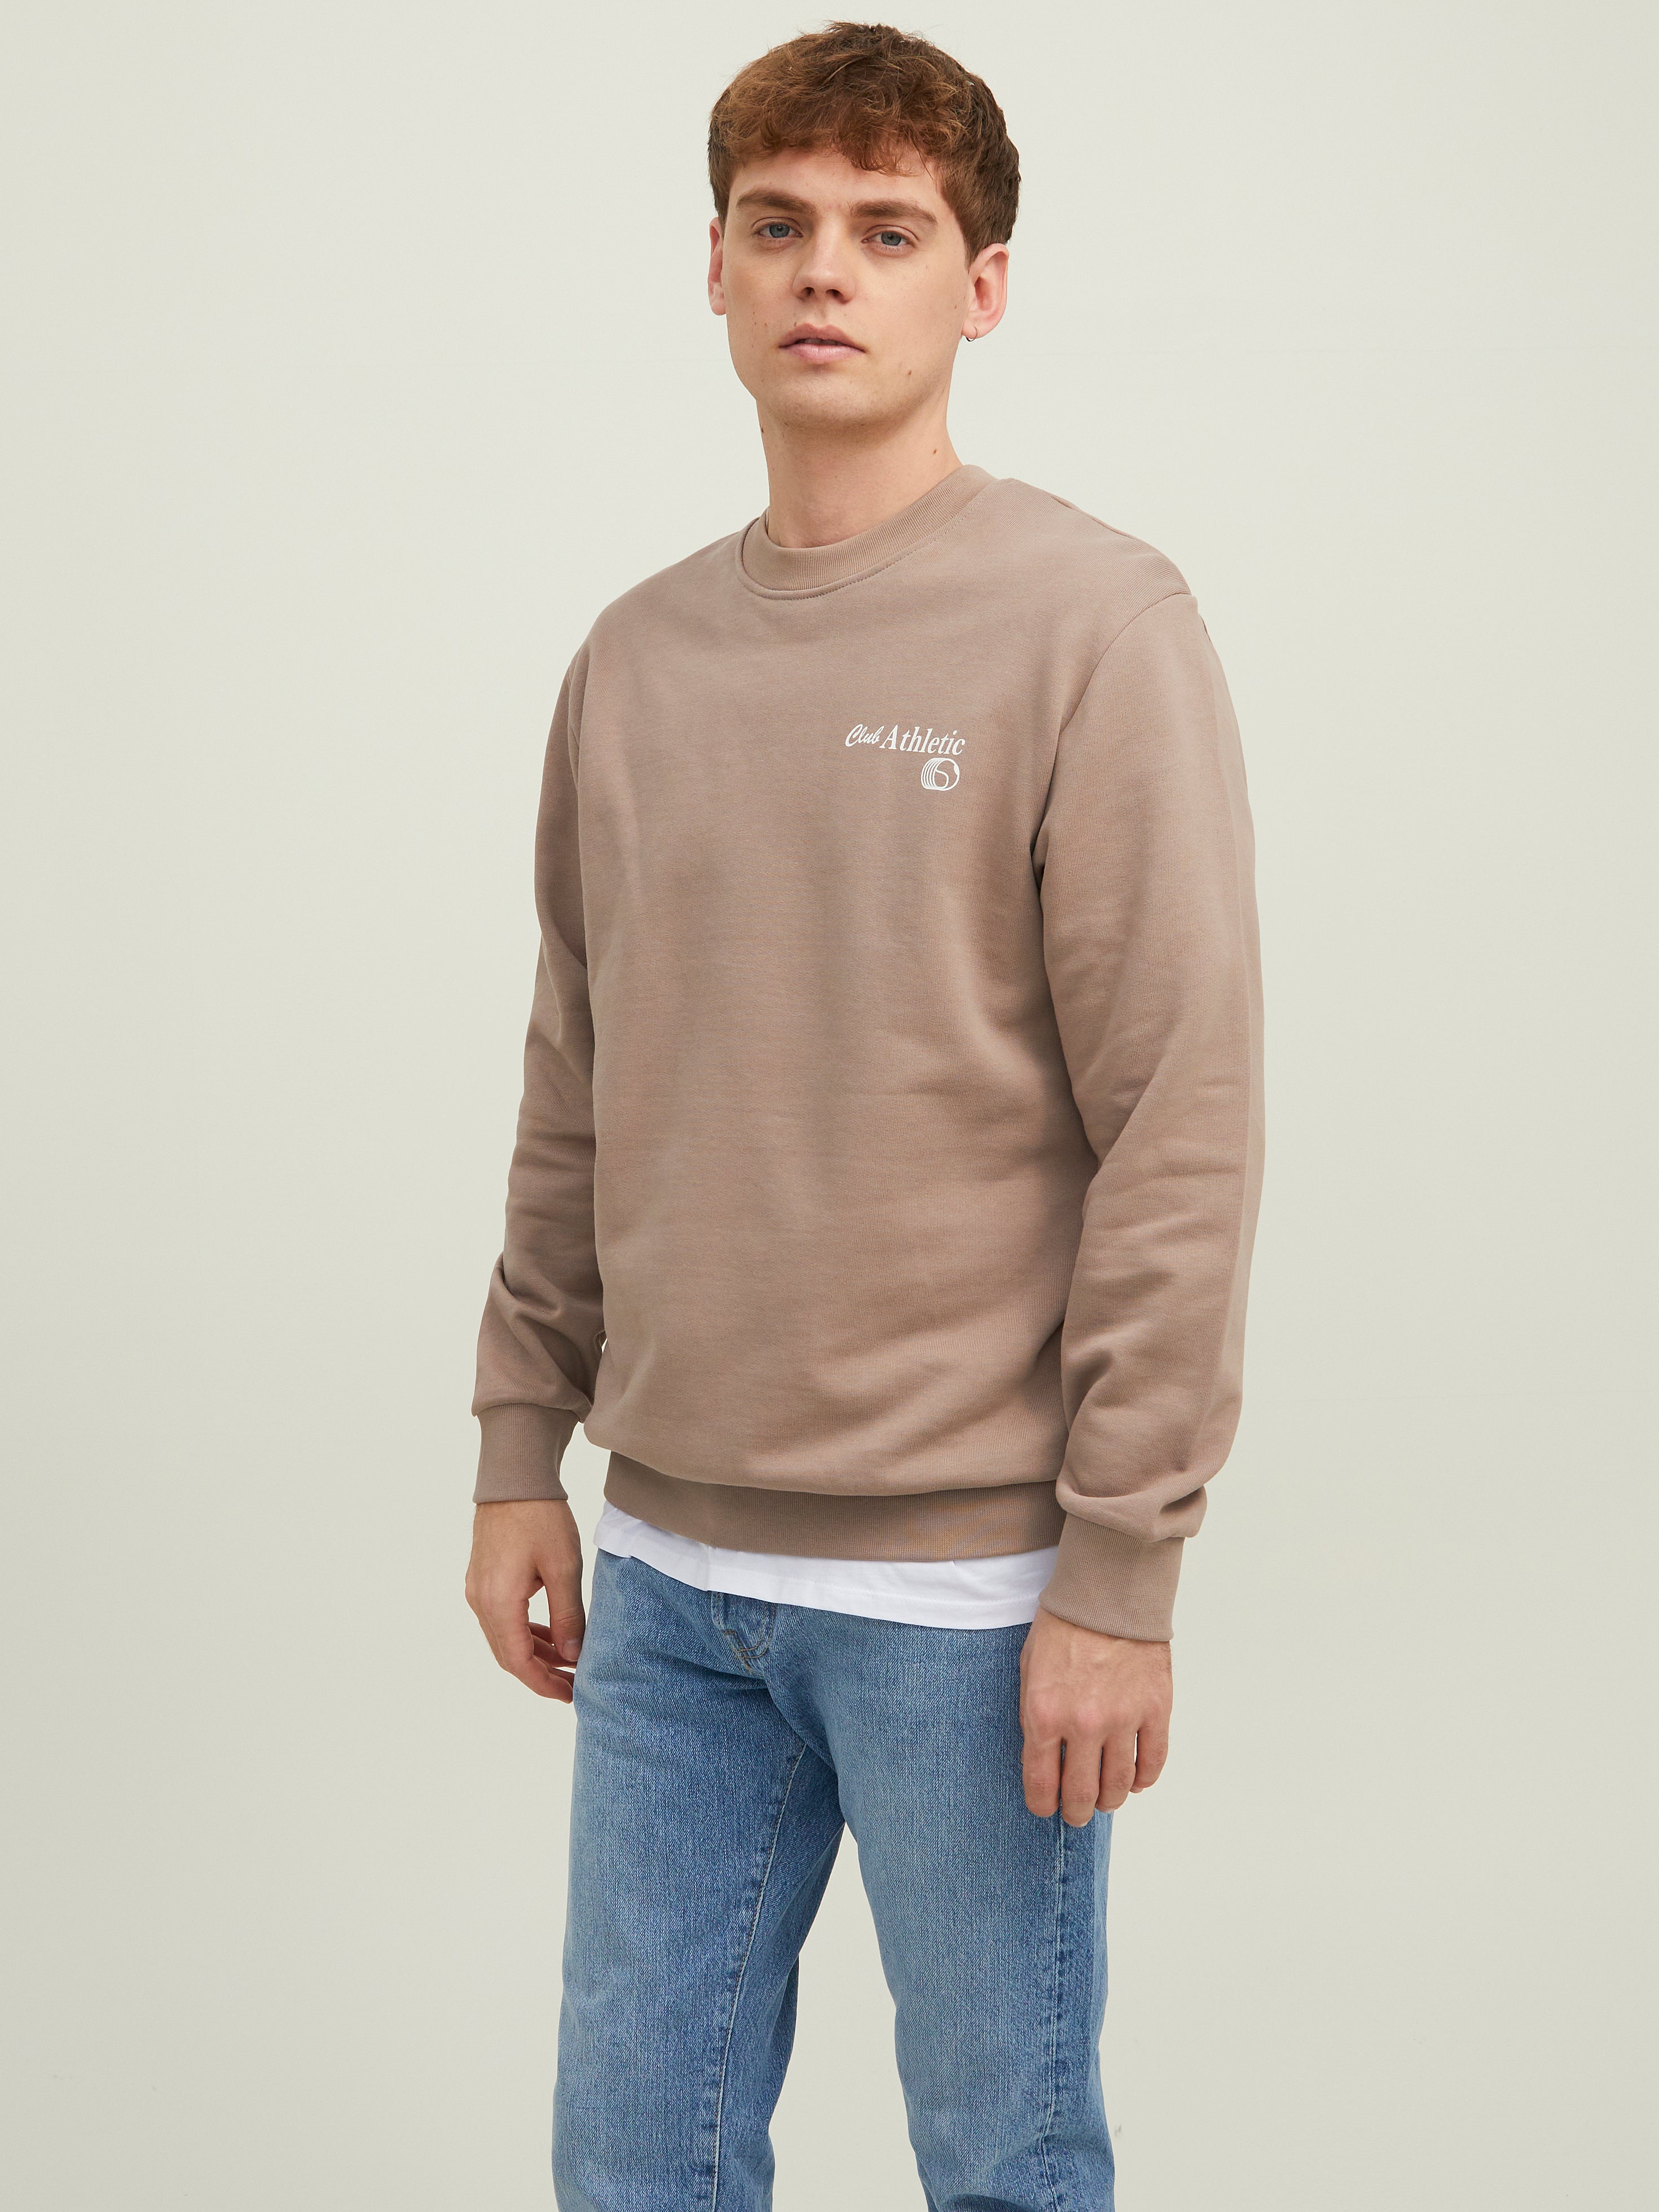 Easy Wear sweatshirt HERREN Pullovers & Sweatshirts Fleece Braun XL Rabatt 88 % 